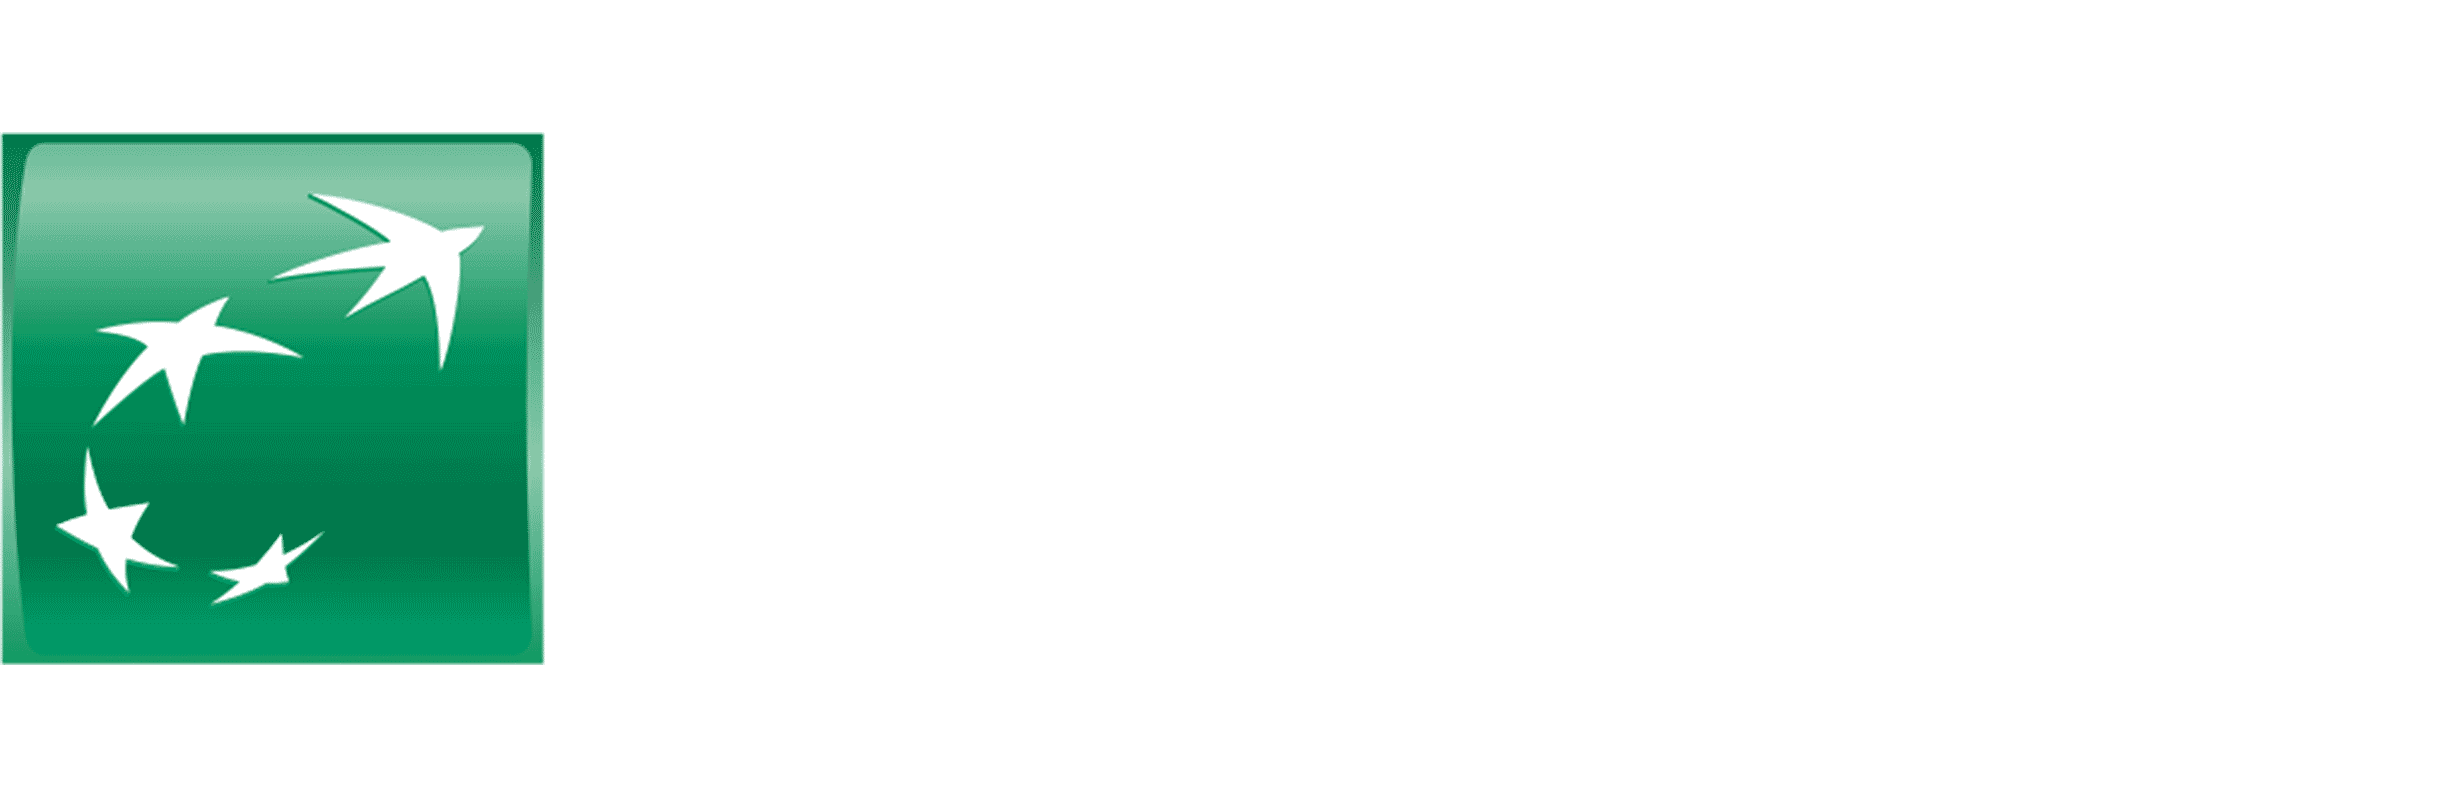 BNP Paribas Logo - Managers Convention - BNP Paribas • ELEPHANT